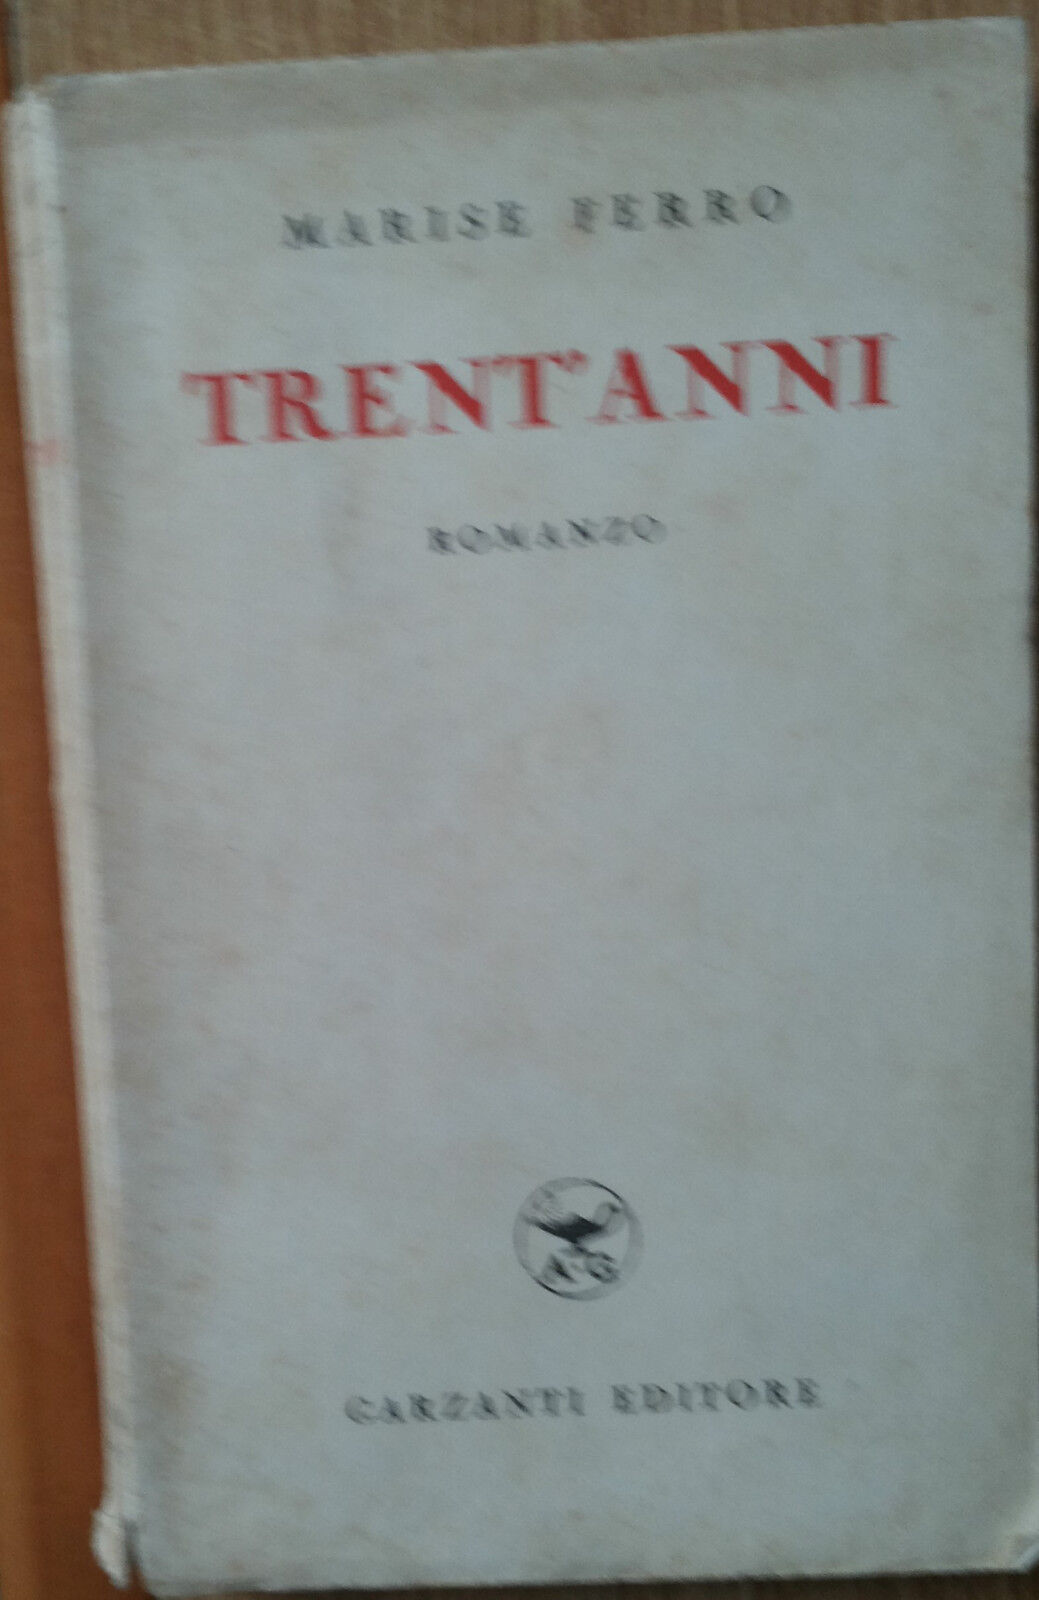 Trent?anni - Ferro - Garzanti Editore1940 - R